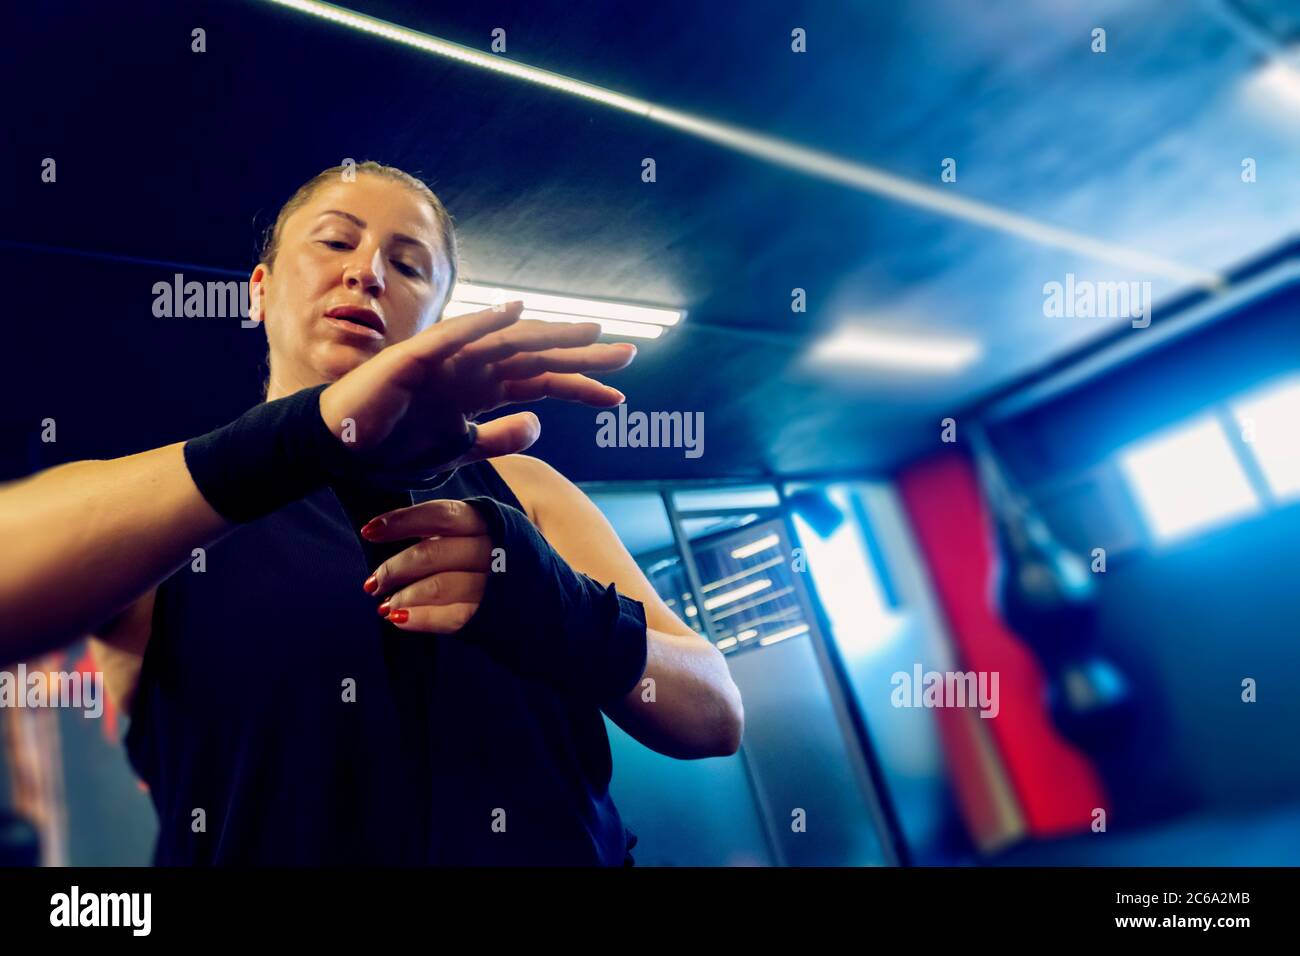 Frau im Fitness-Salon bereitet sich auf ihr Kickboxen-Training vor. Sie trägt Schwarz und bindet eine Art Verband an ihre Hände Stockfoto